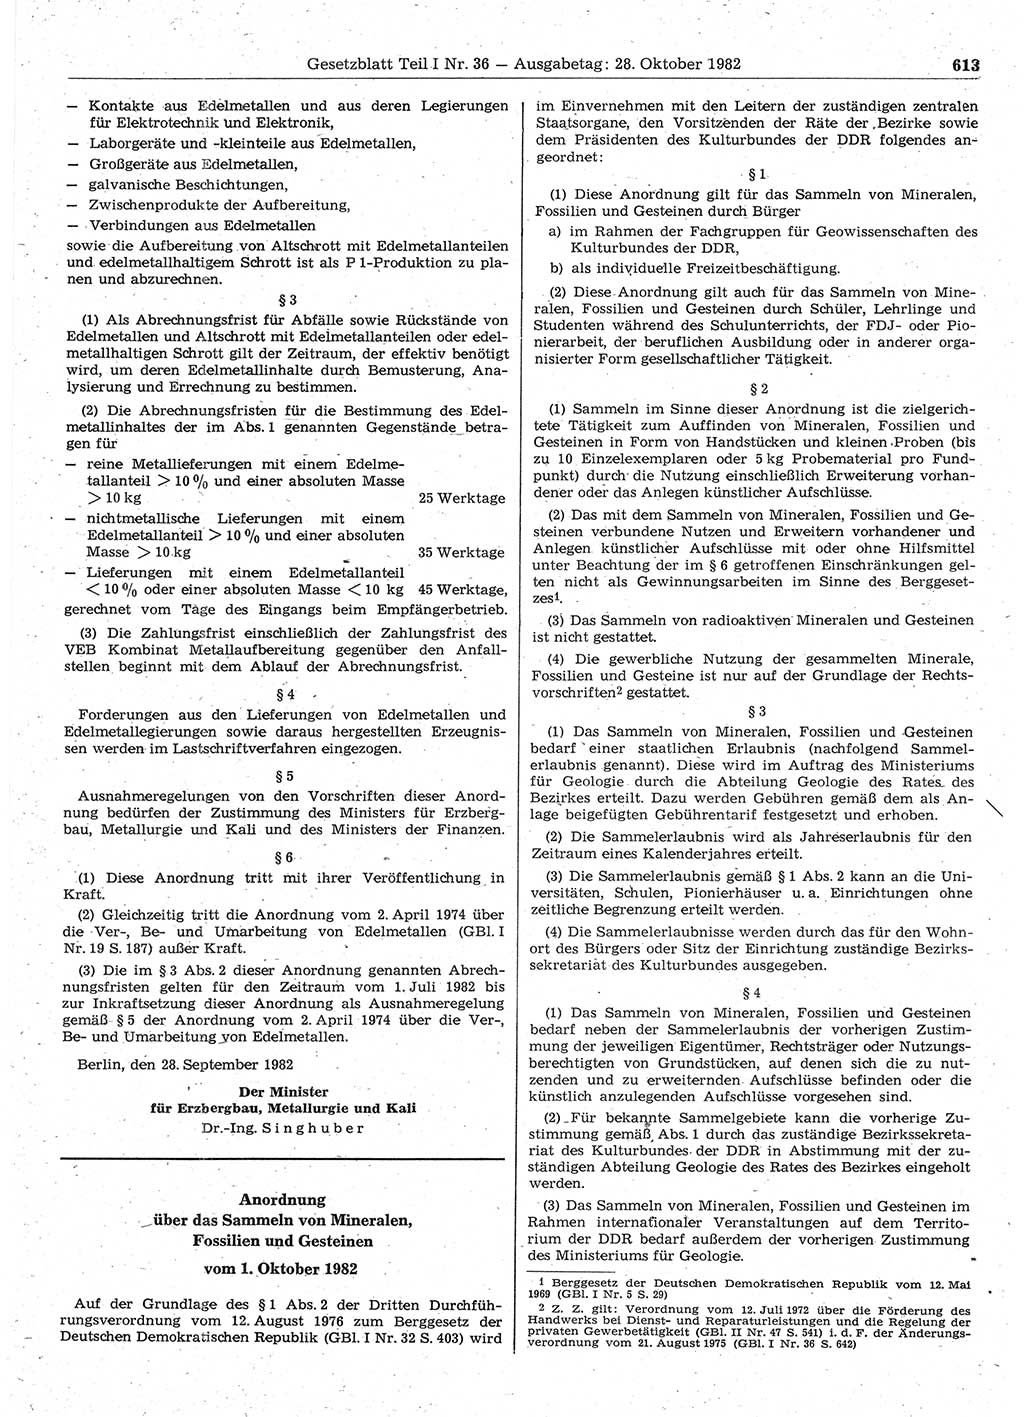 Gesetzblatt (GBl.) der Deutschen Demokratischen Republik (DDR) Teil Ⅰ 1982, Seite 613 (GBl. DDR Ⅰ 1982, S. 613)